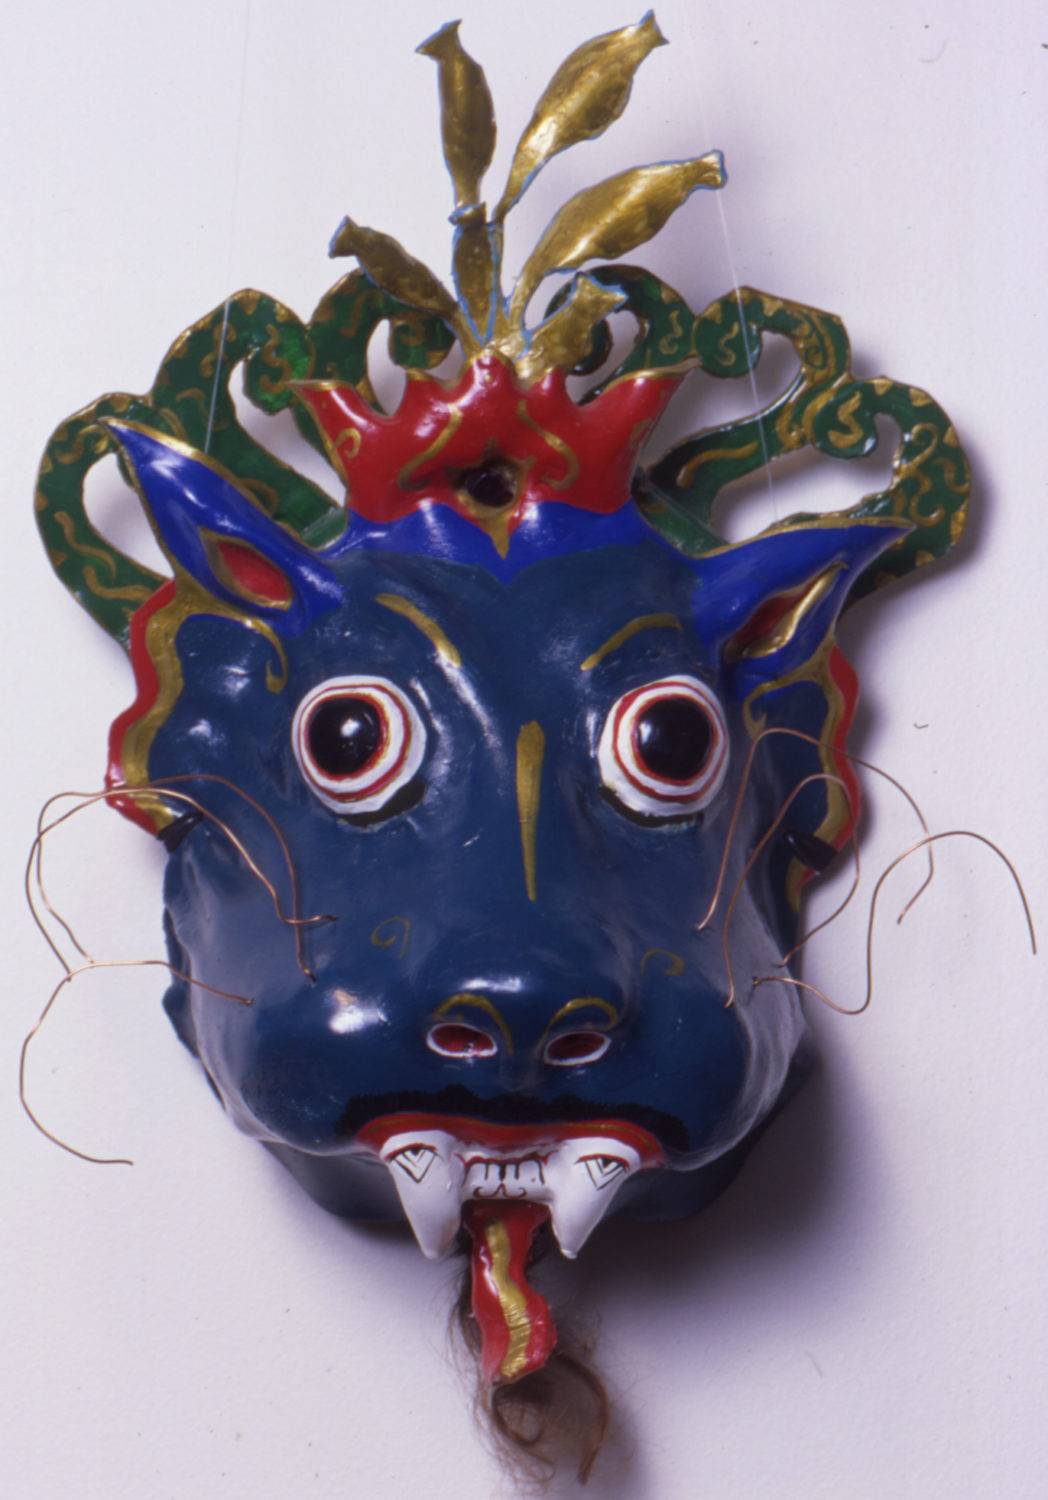 A traditional Balinese Barong mask